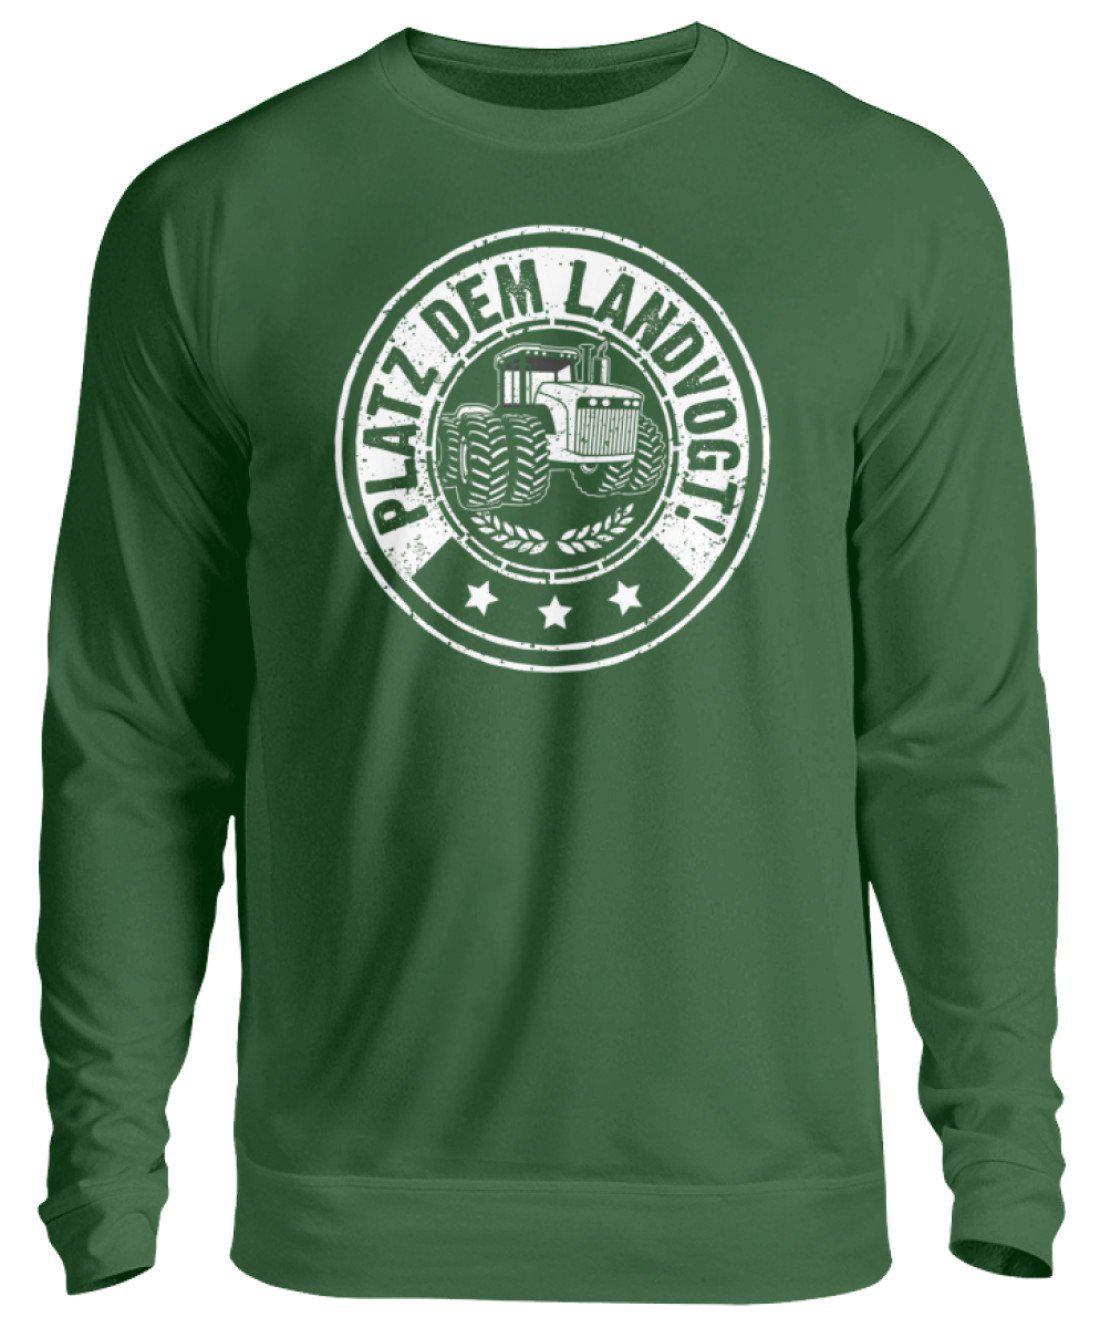 Platz dem Landvogt · Unisex Sweatshirt Pullover-Unisex Sweatshirt-Bottle Green-S-Agrarstarz